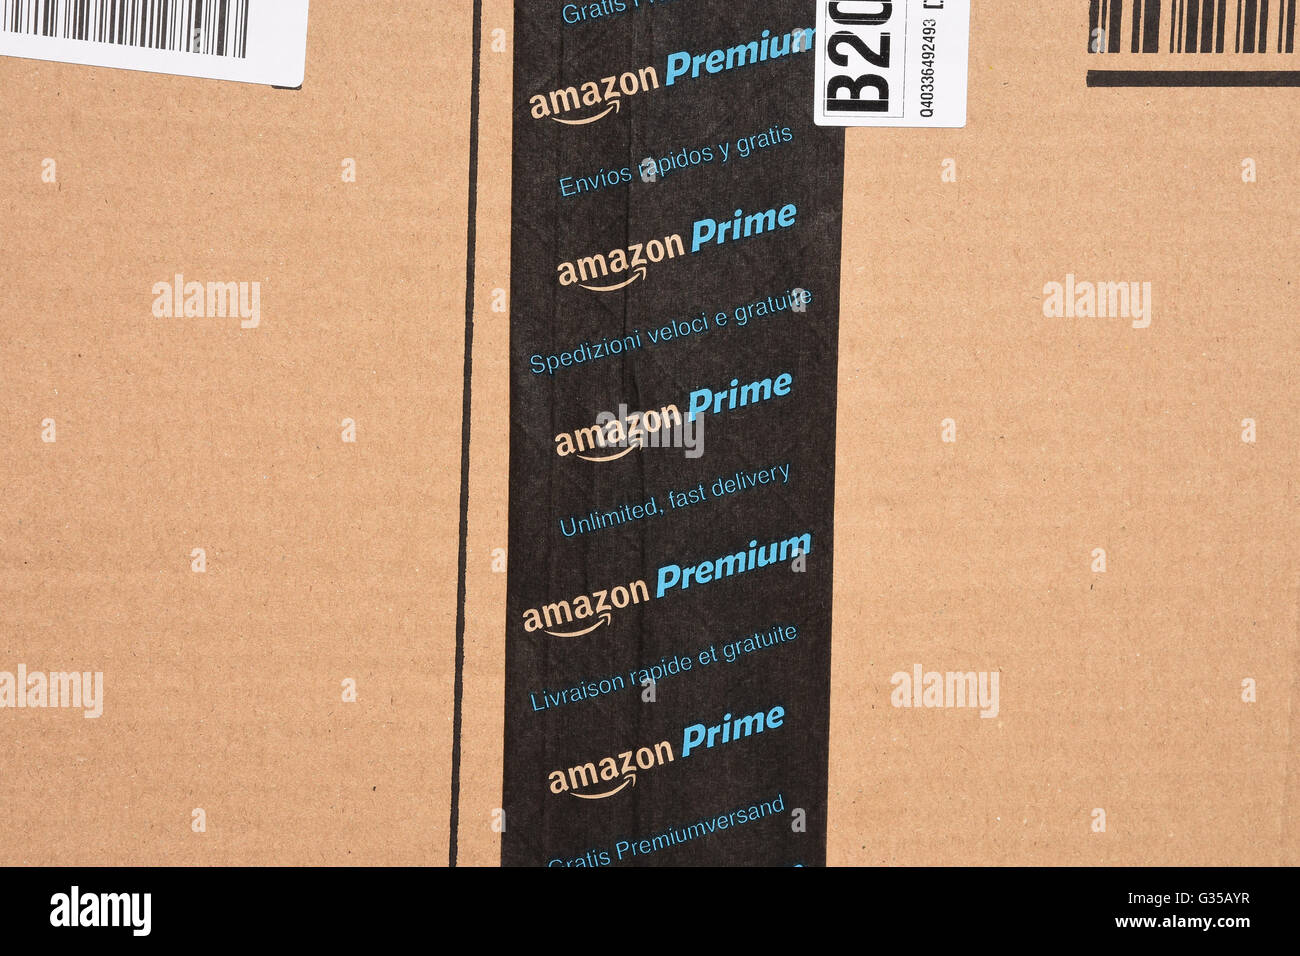 Amazon Prime-Logo auf einem Karton Stockfotografie - Alamy